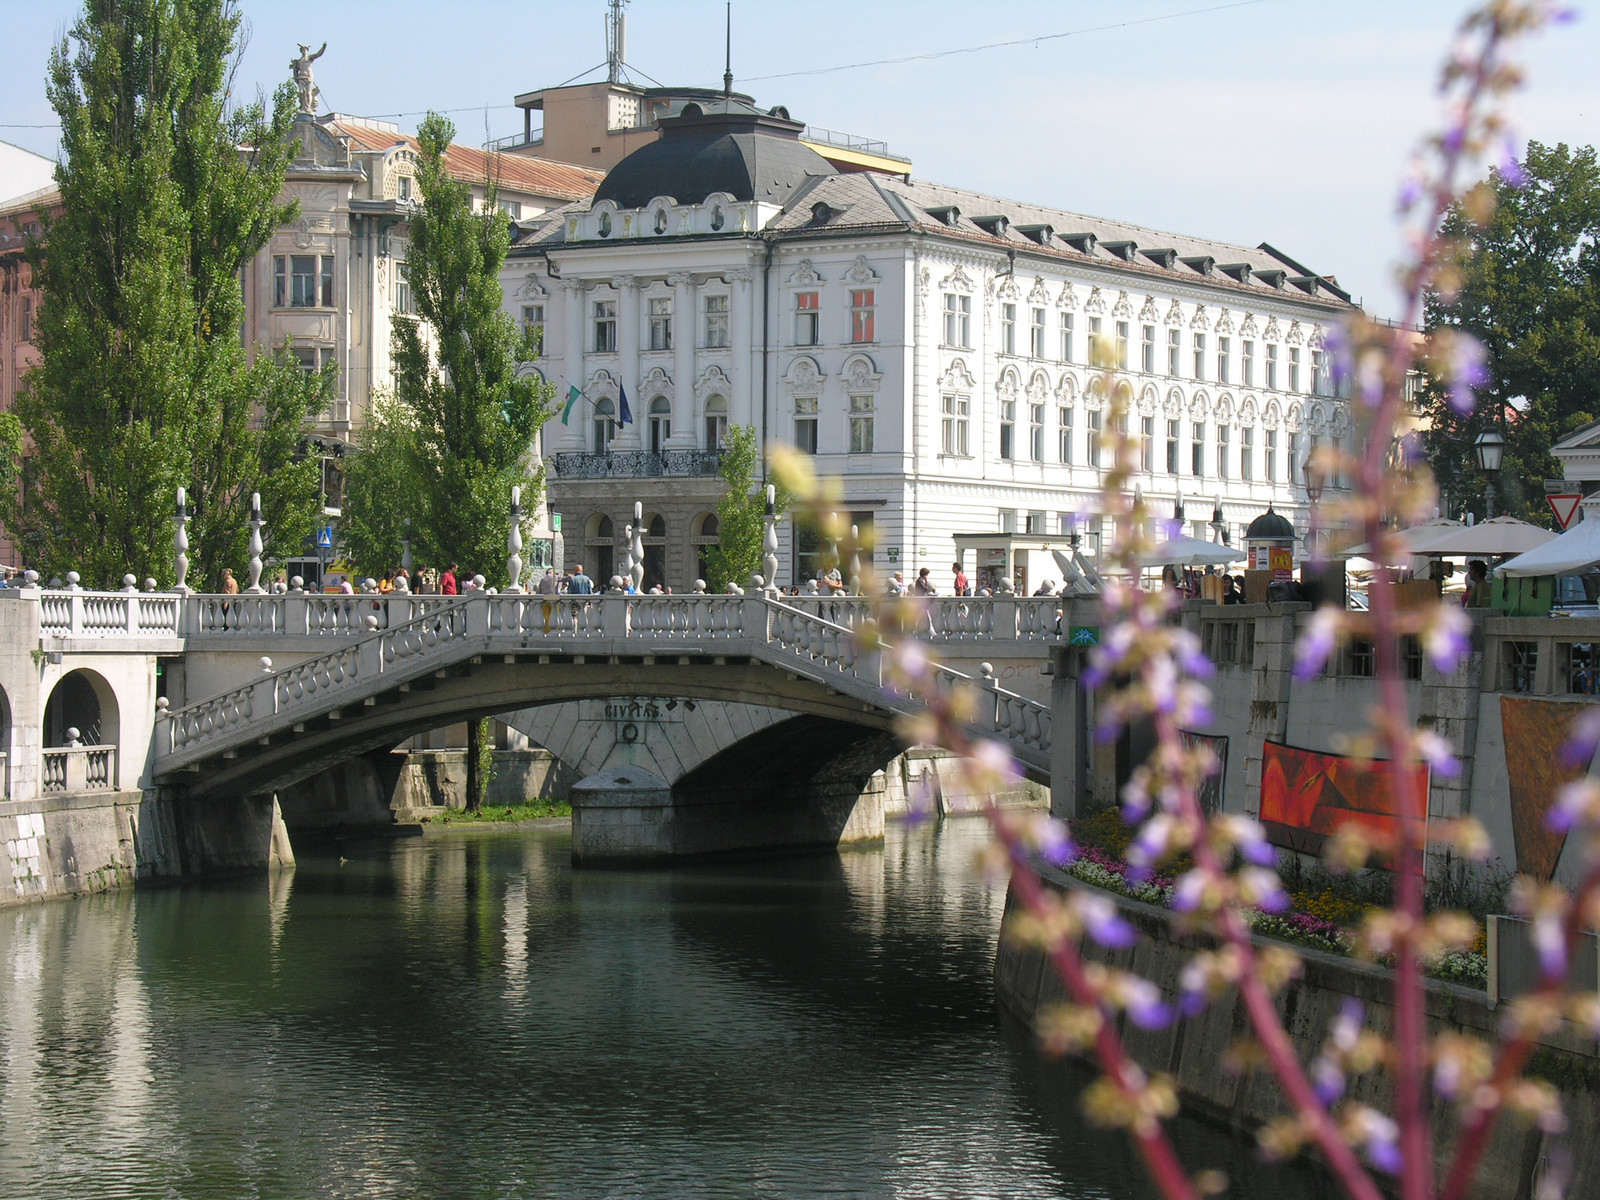 Ljubljana - Tromostovje (Hármas híd)